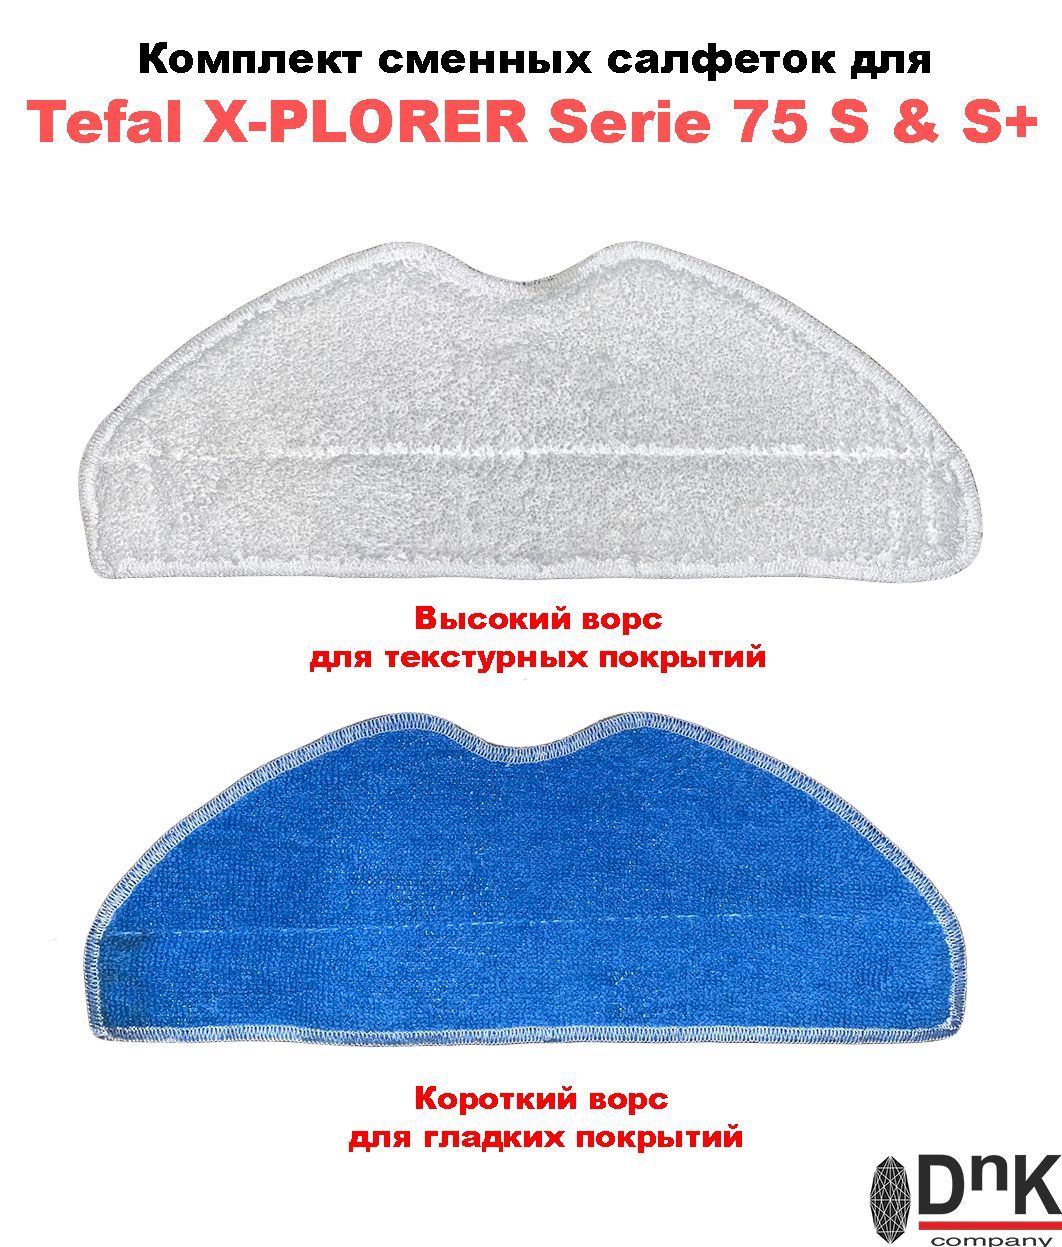 X plorer serie 75 rg8577wh. Tefal x-plorer serie 75 s rg8575wh. Tefal x-plorer serie 75 s+. Тряпка для Tefal x-plorer serie 75. Приспособление для сменных тряпочек.